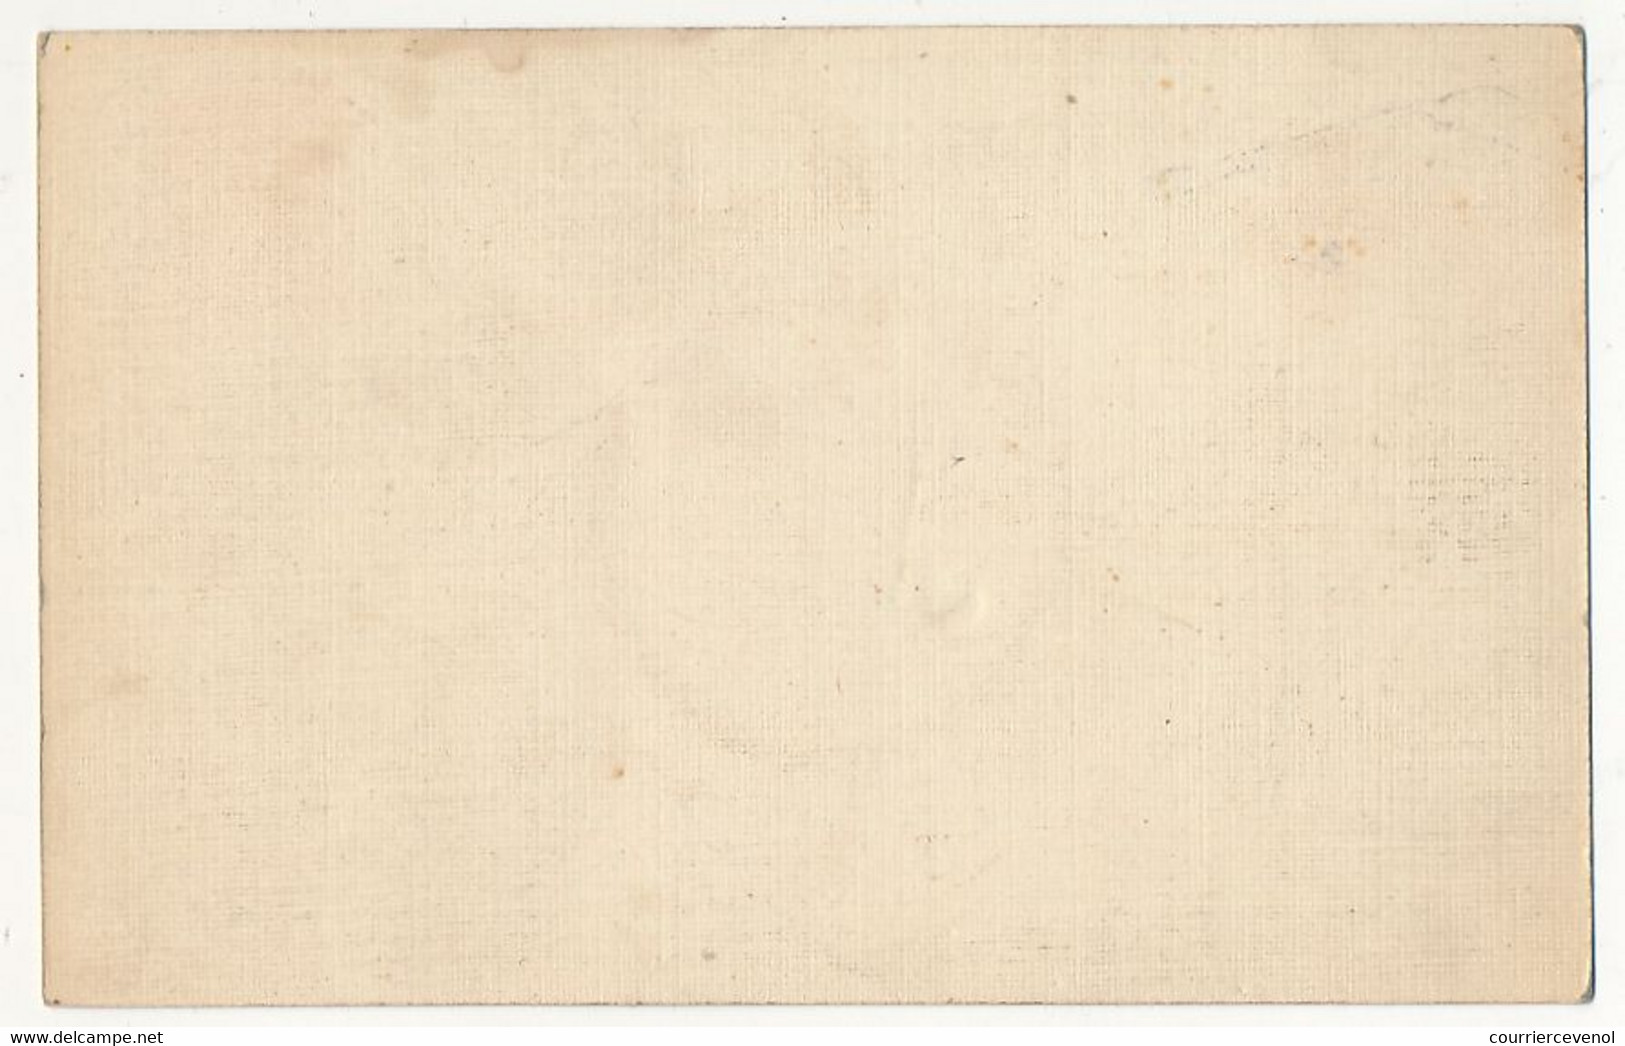 Carte Postale Réservée Aux Prisonniers De Guerre - Via Pontarlier - Neuve - Guerre De 1914-18